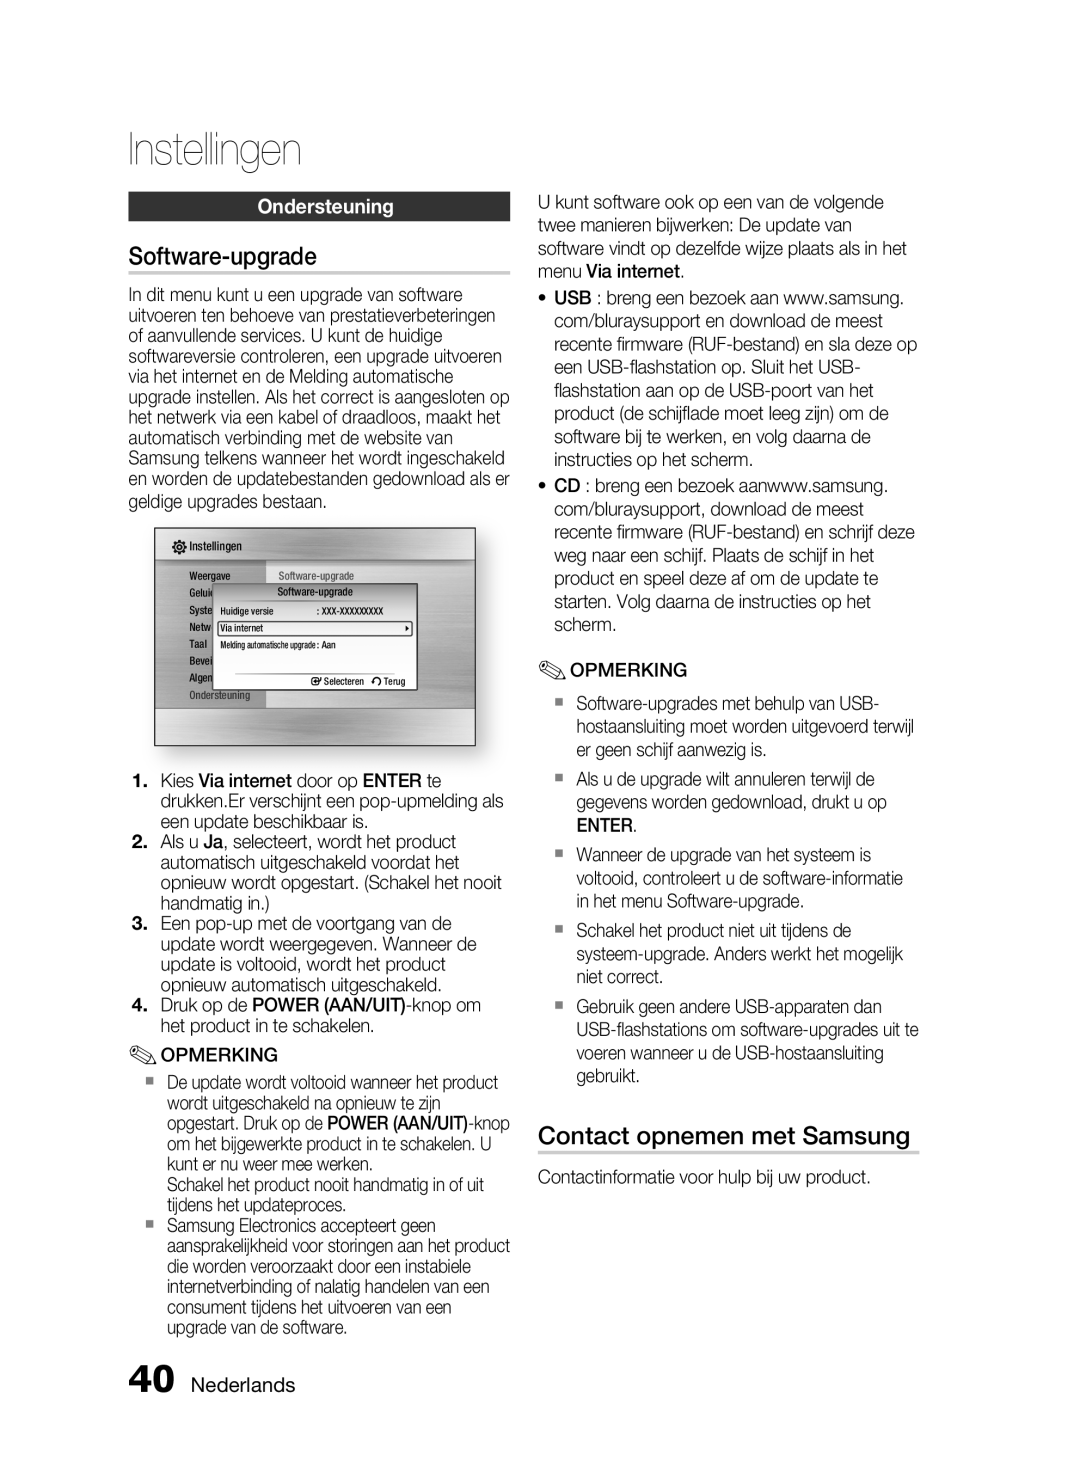 Samsung HT-C6200/XEF manual Software-upgrade, Contact opnemen met Samsung, Ondersteuning, Nederlands, Instellingen 